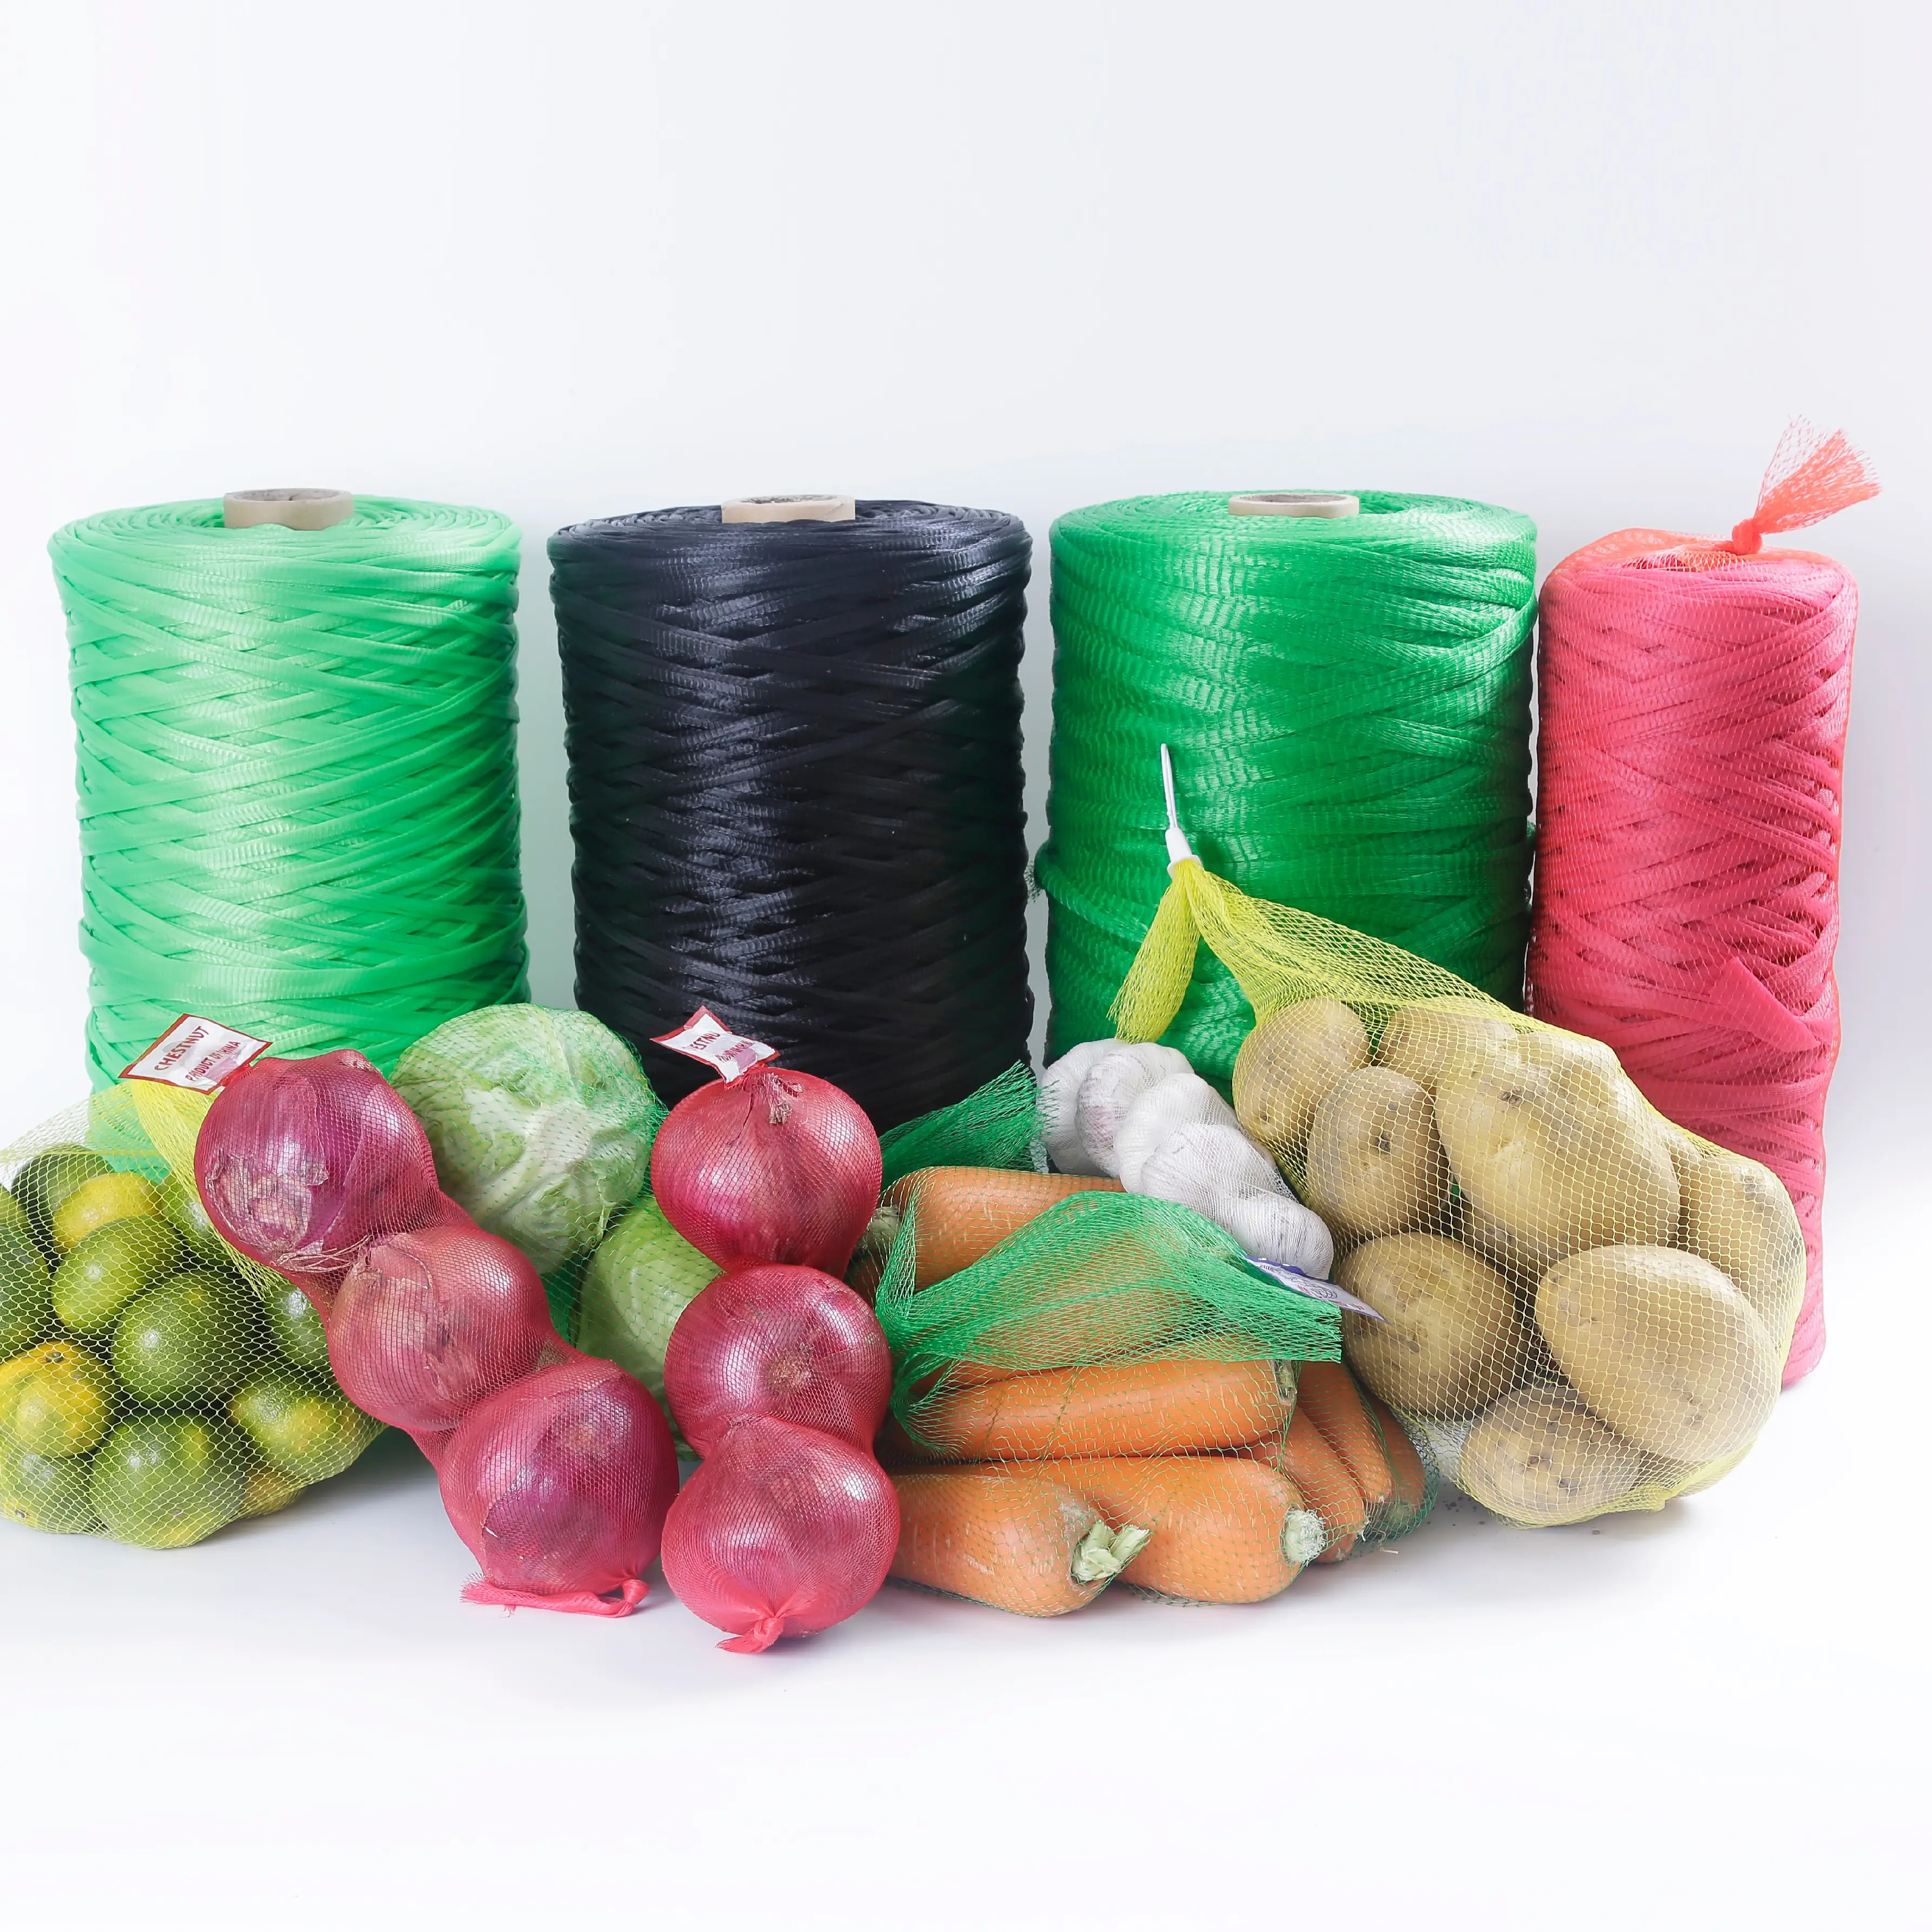 Rollo de bolsas de malla de polietileno para verduras, cebolla, patatas, red, barata, venta al por mayor